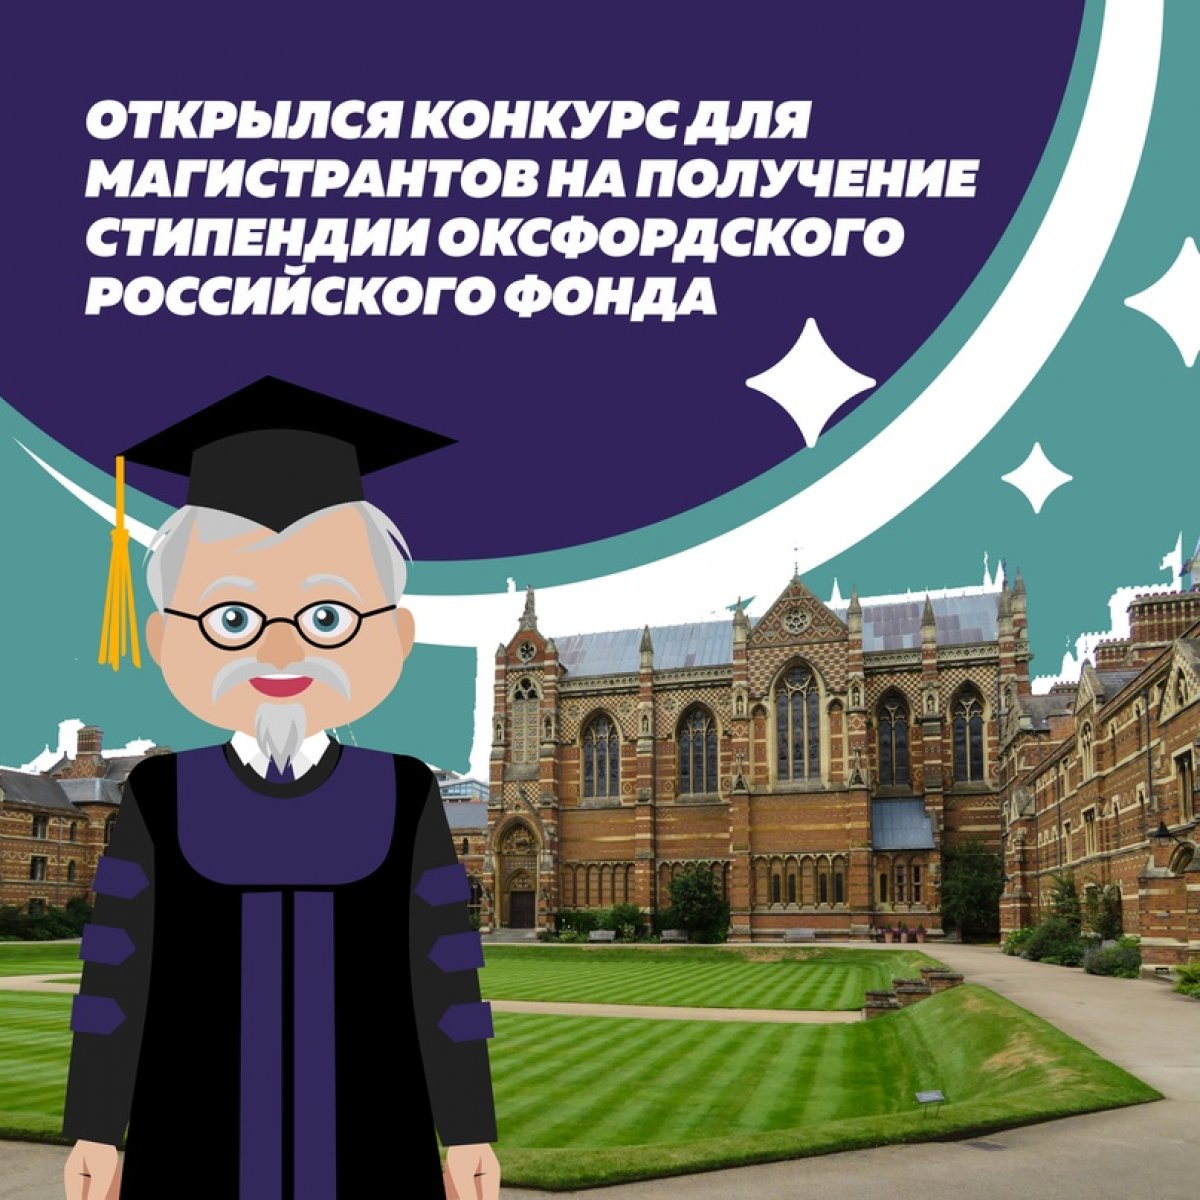 Со 2 сентября до 30 сентября открыт магистерский конкурс на получение стипендии Оксфордского Российского Фонда в 2020-2021 учебном году!